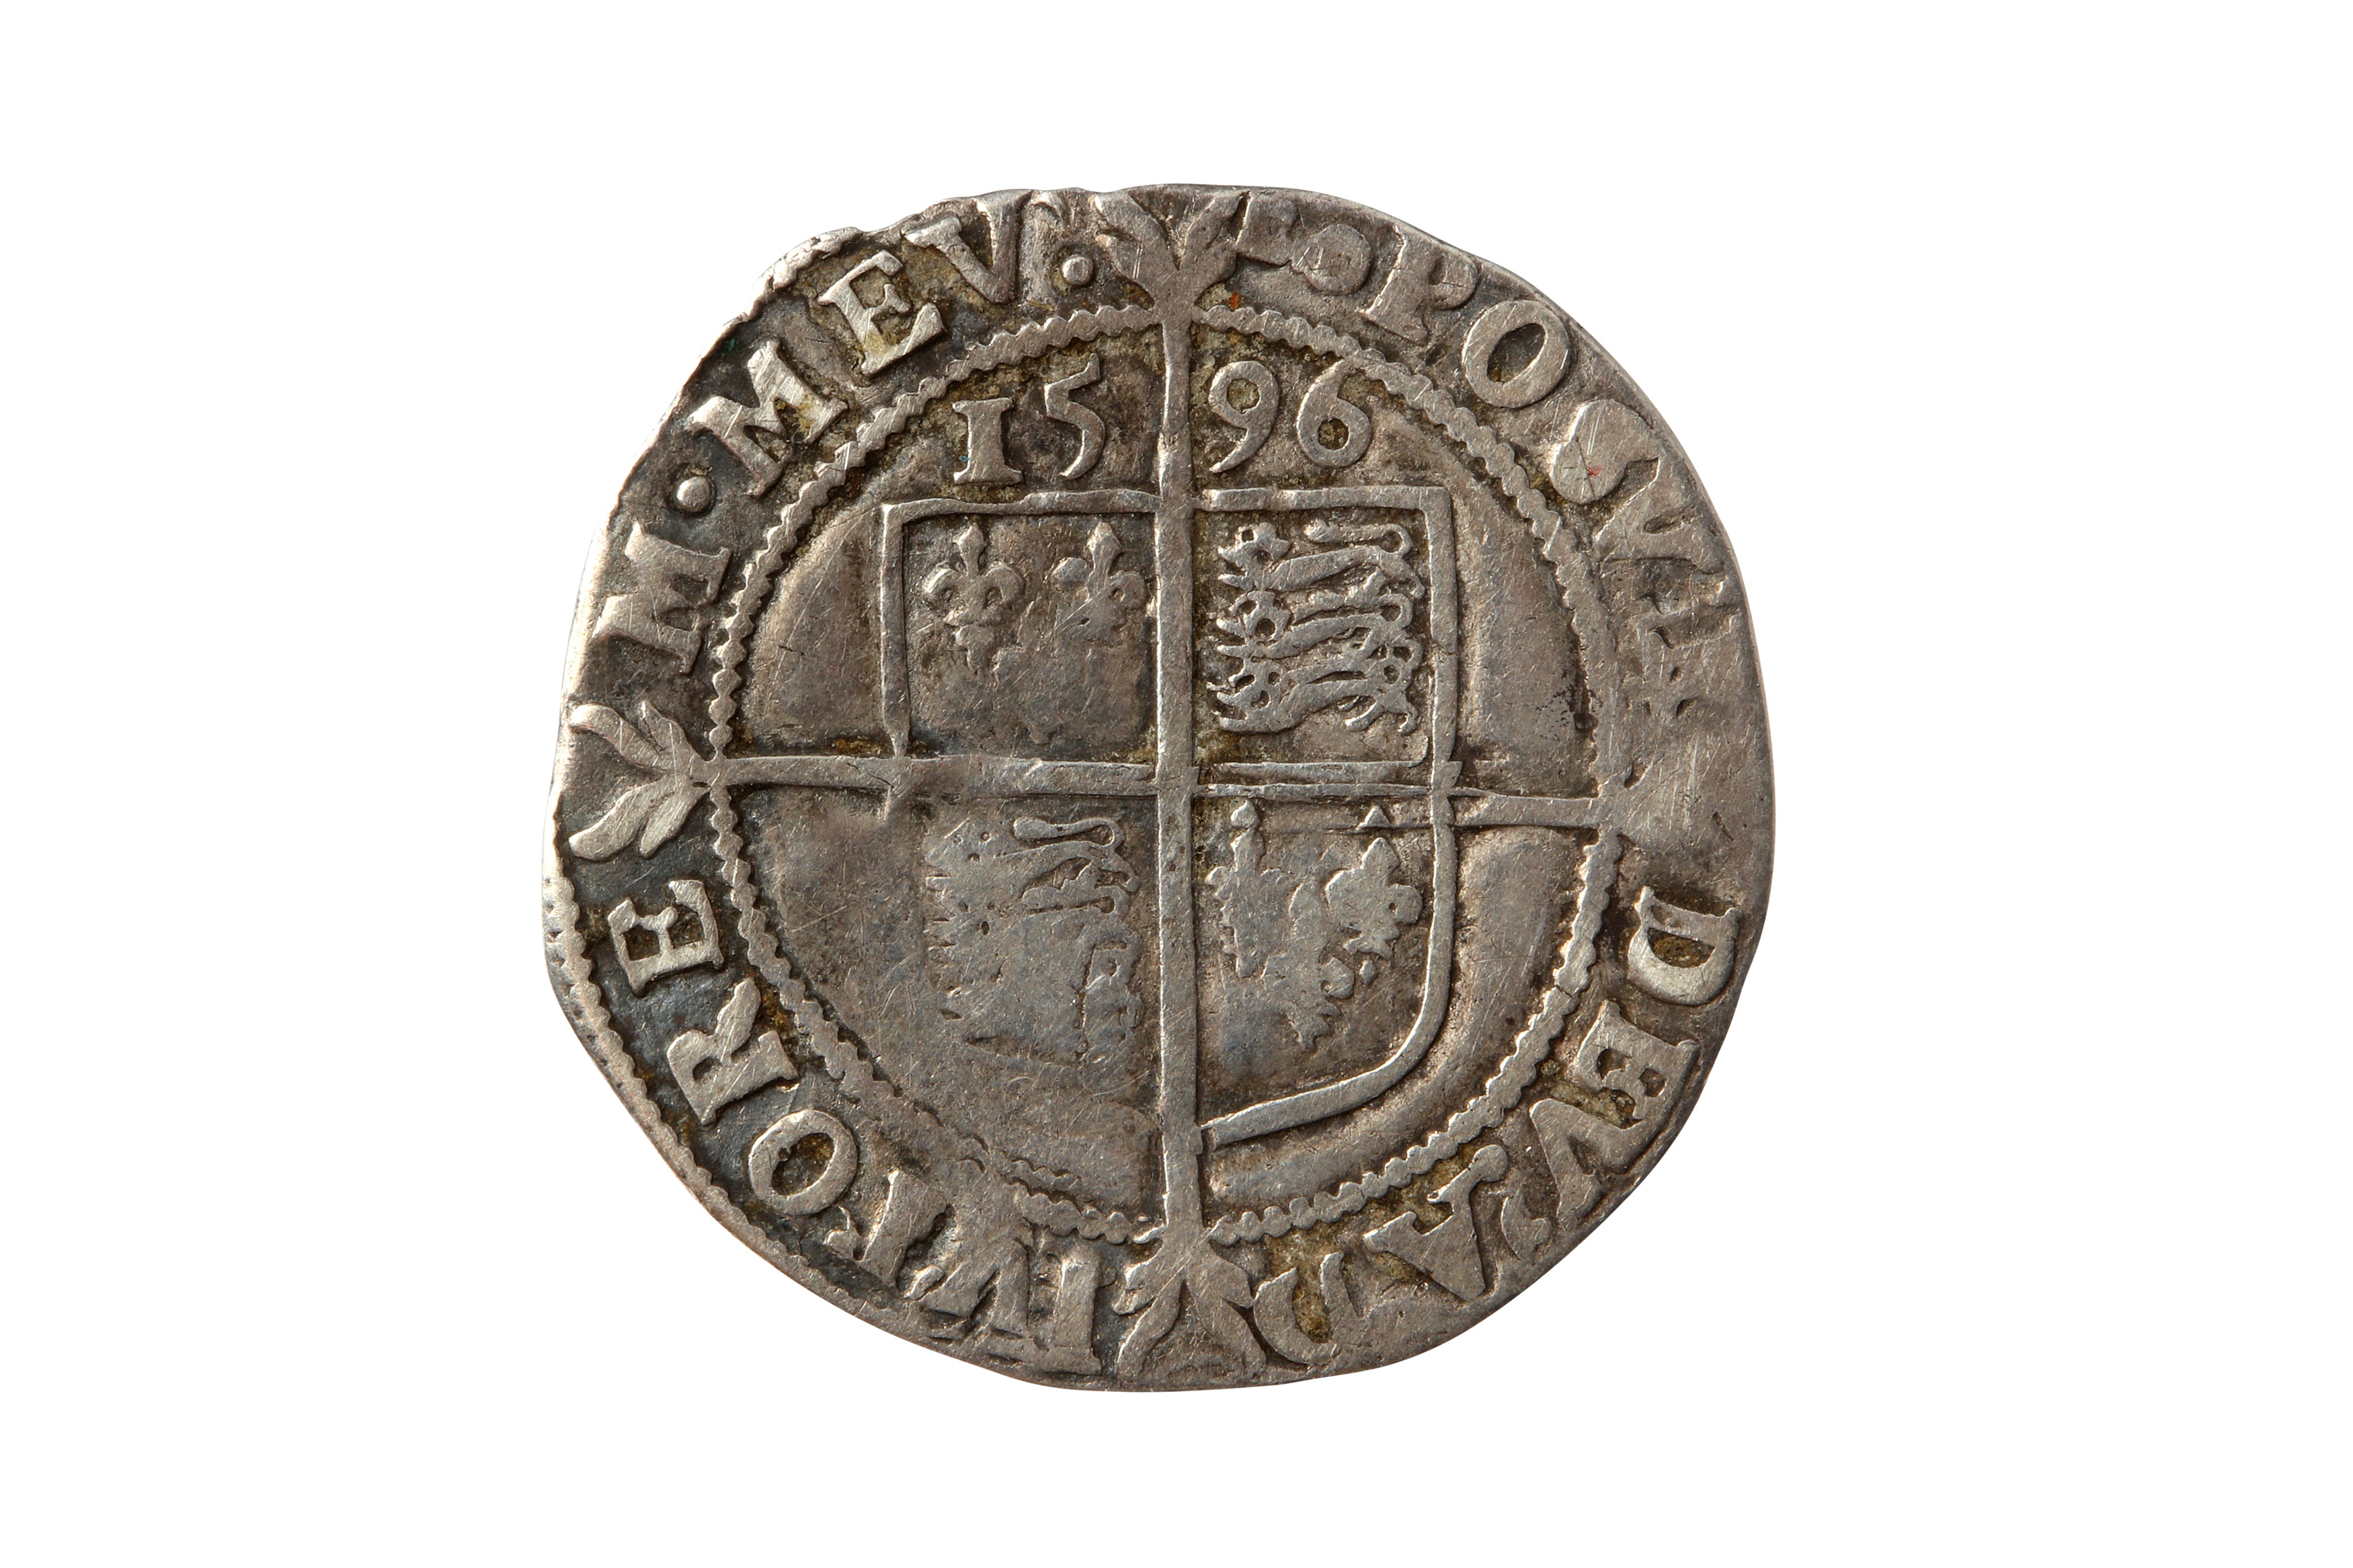 ELIZABETH I (1558 - 1603), 1596 SIXPENCE. - Image 2 of 2